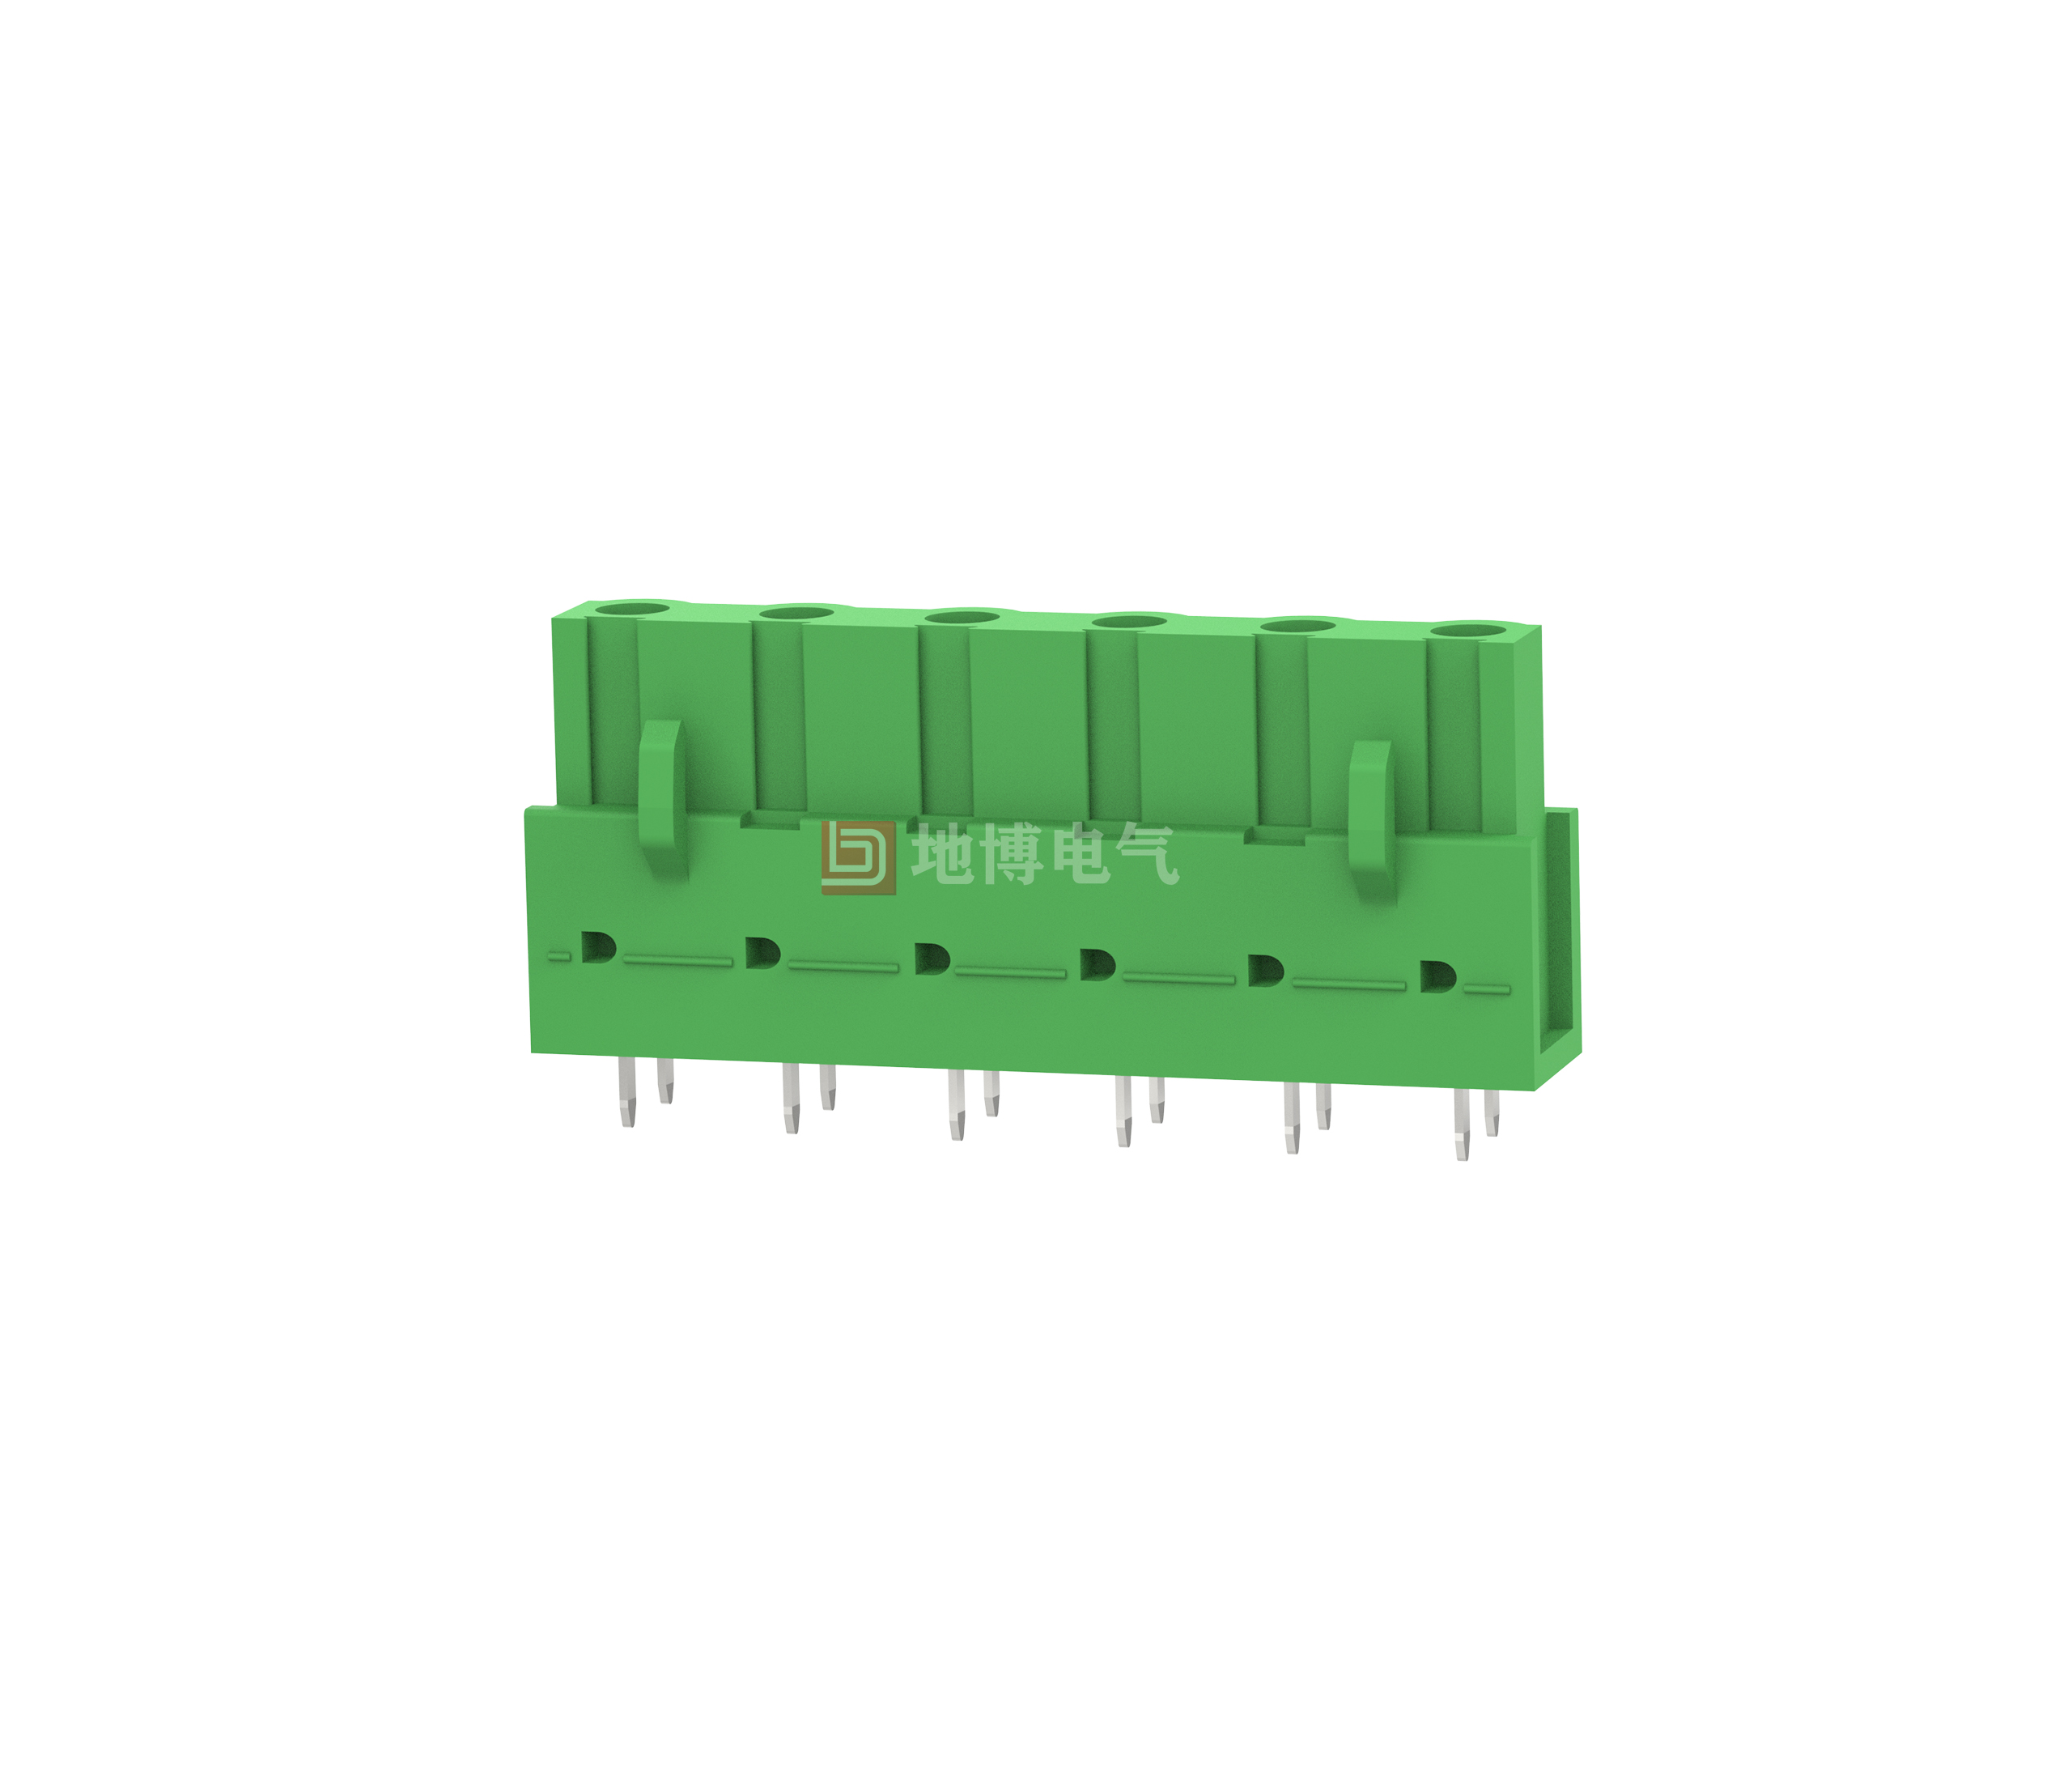 PCB socket DB2EB-7.62